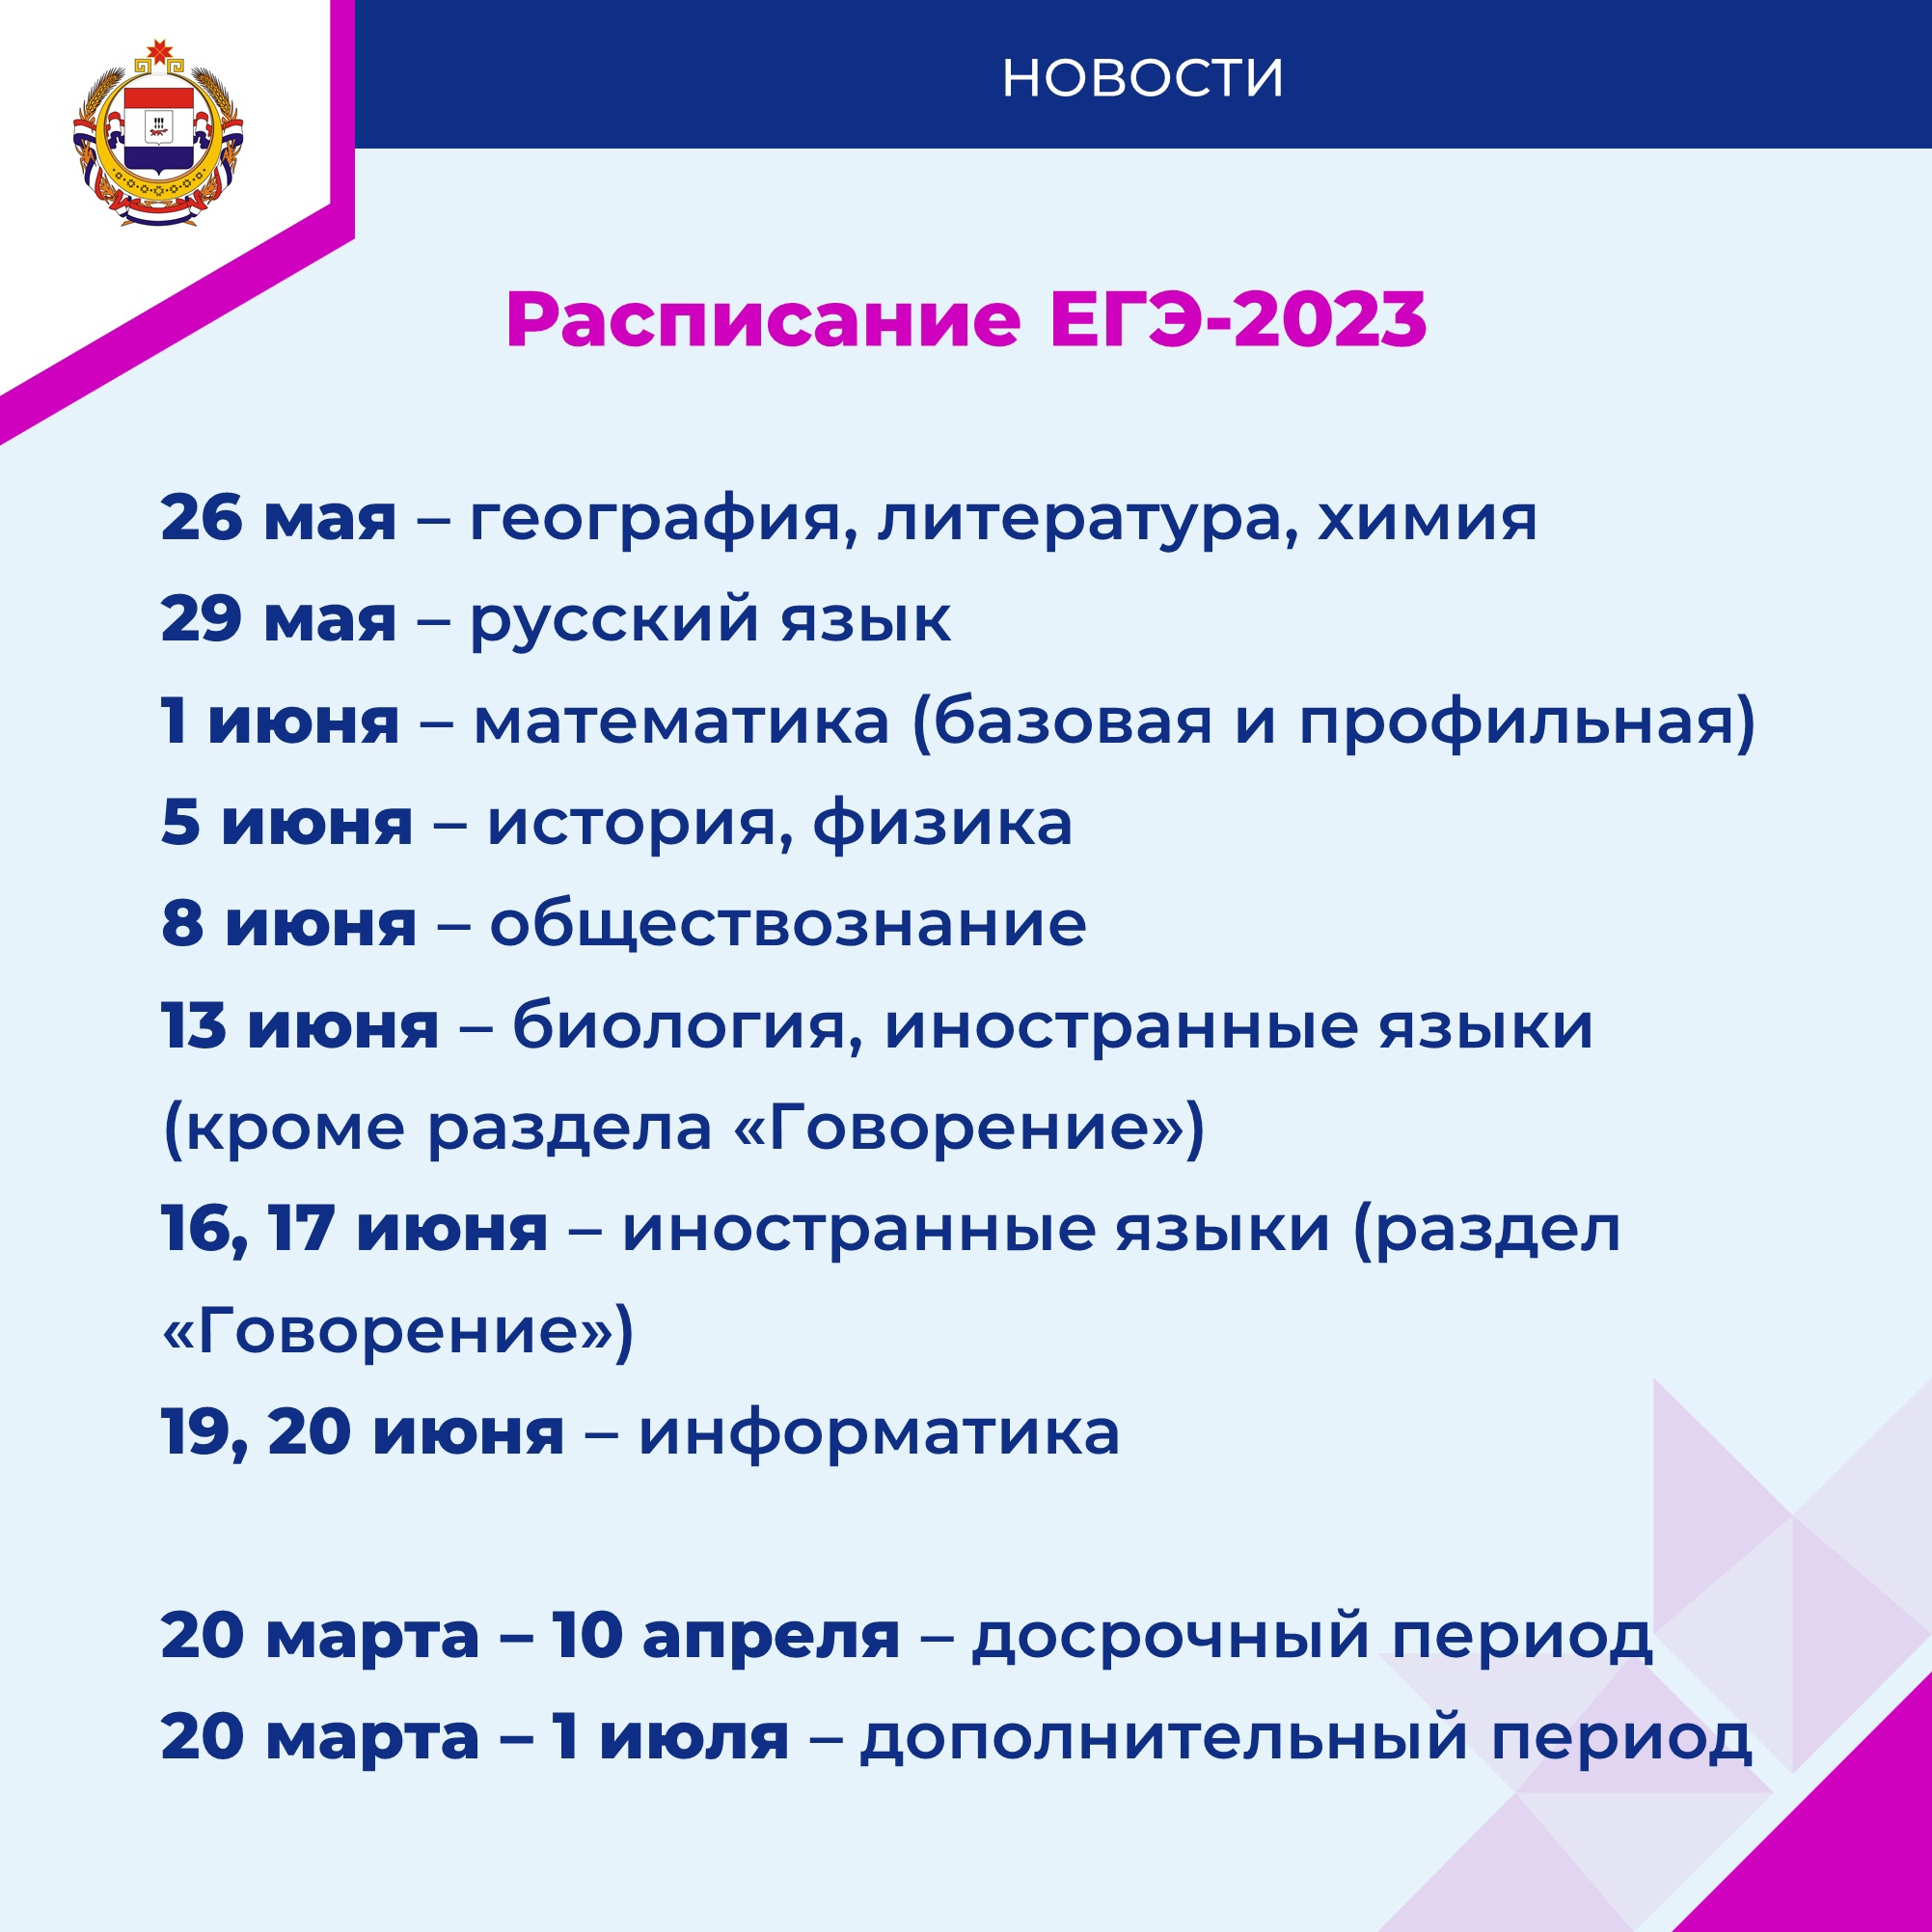 Утверждено расписание ЕГЭ и ОГЭ на 2023 год.